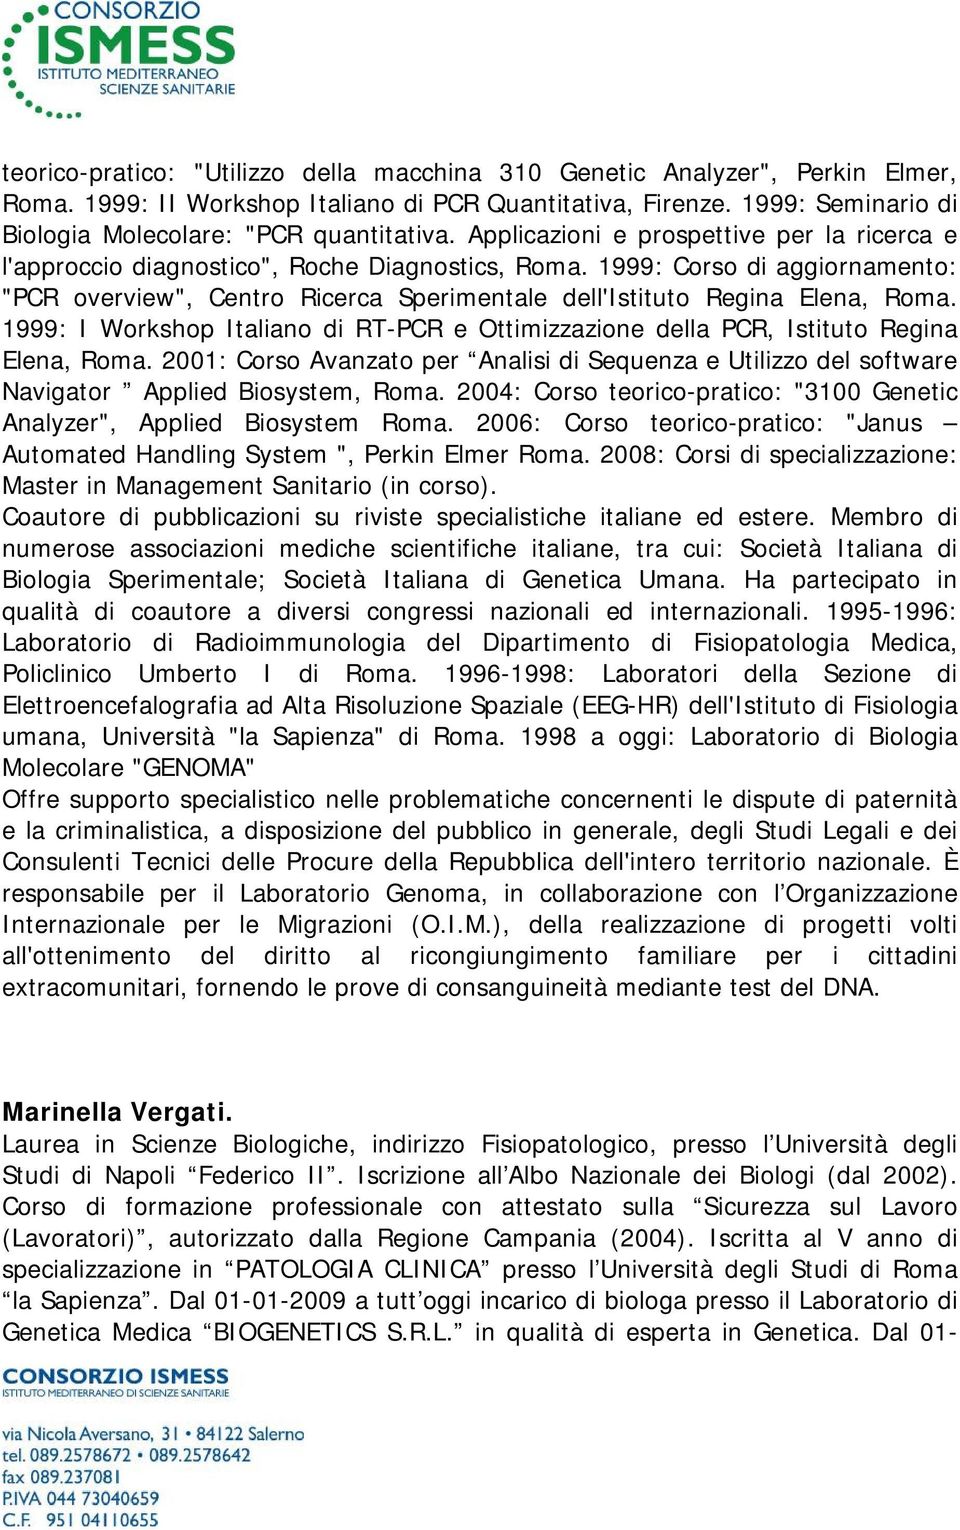 1999: Corso di aggiornamento: "PCR overview", Centro Ricerca Sperimentale dell'istituto Regina Elena, Roma. 1999: I Workshop Italiano di RT-PCR e Ottimizzazione della PCR, Istituto Regina Elena, Roma.